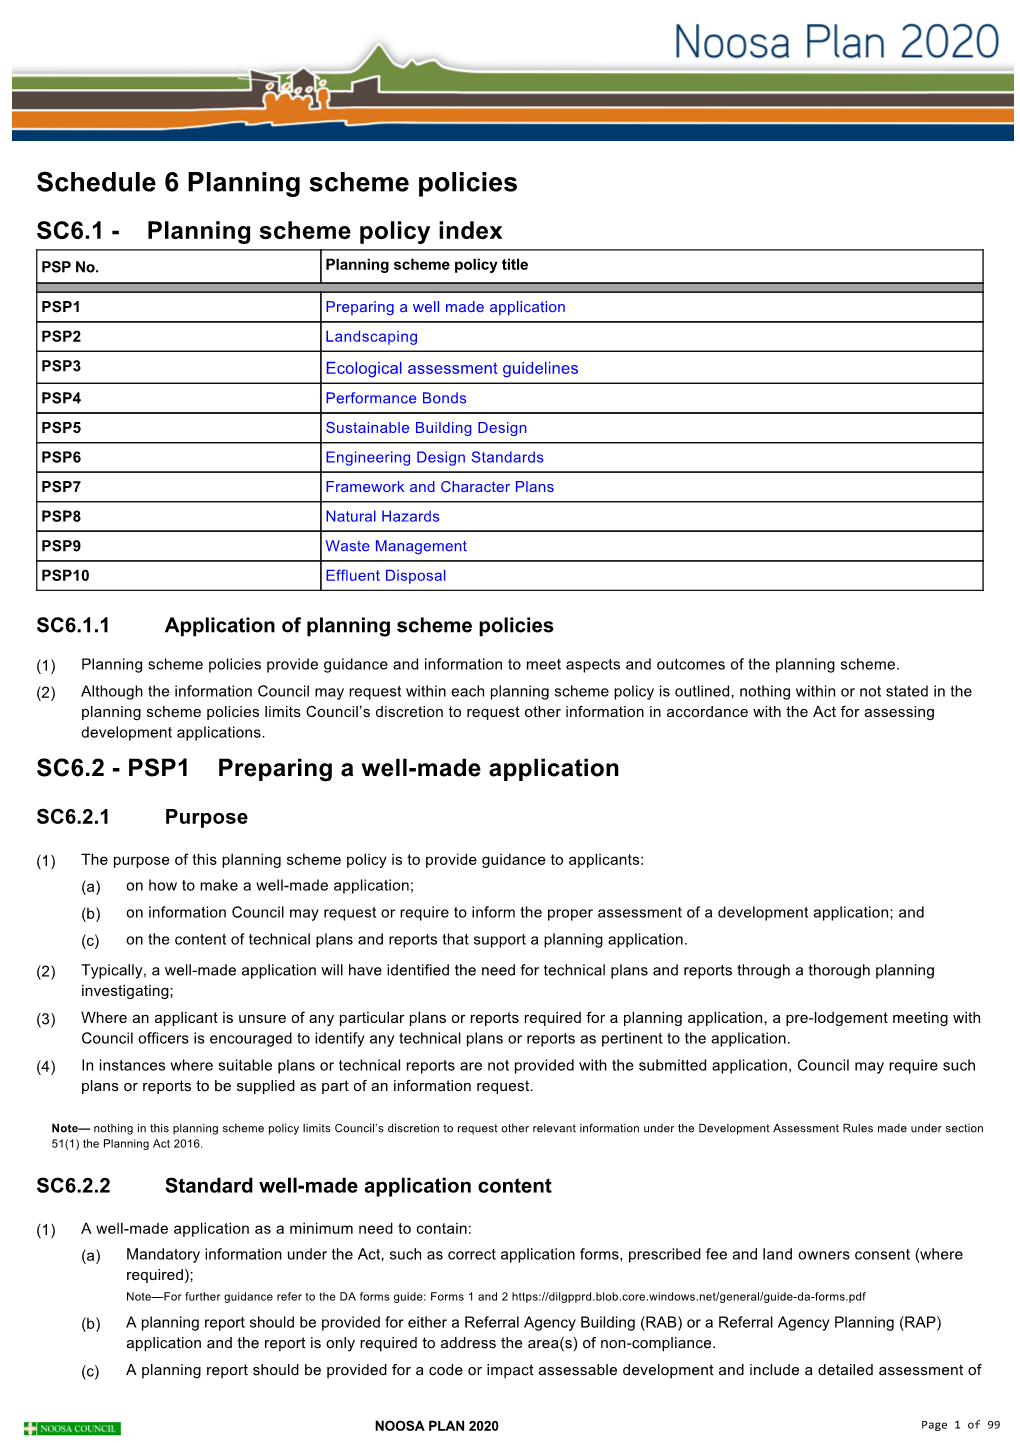 Schedule 6 Planning Scheme Policies SC6.1 ­ Planning Scheme Policy Index